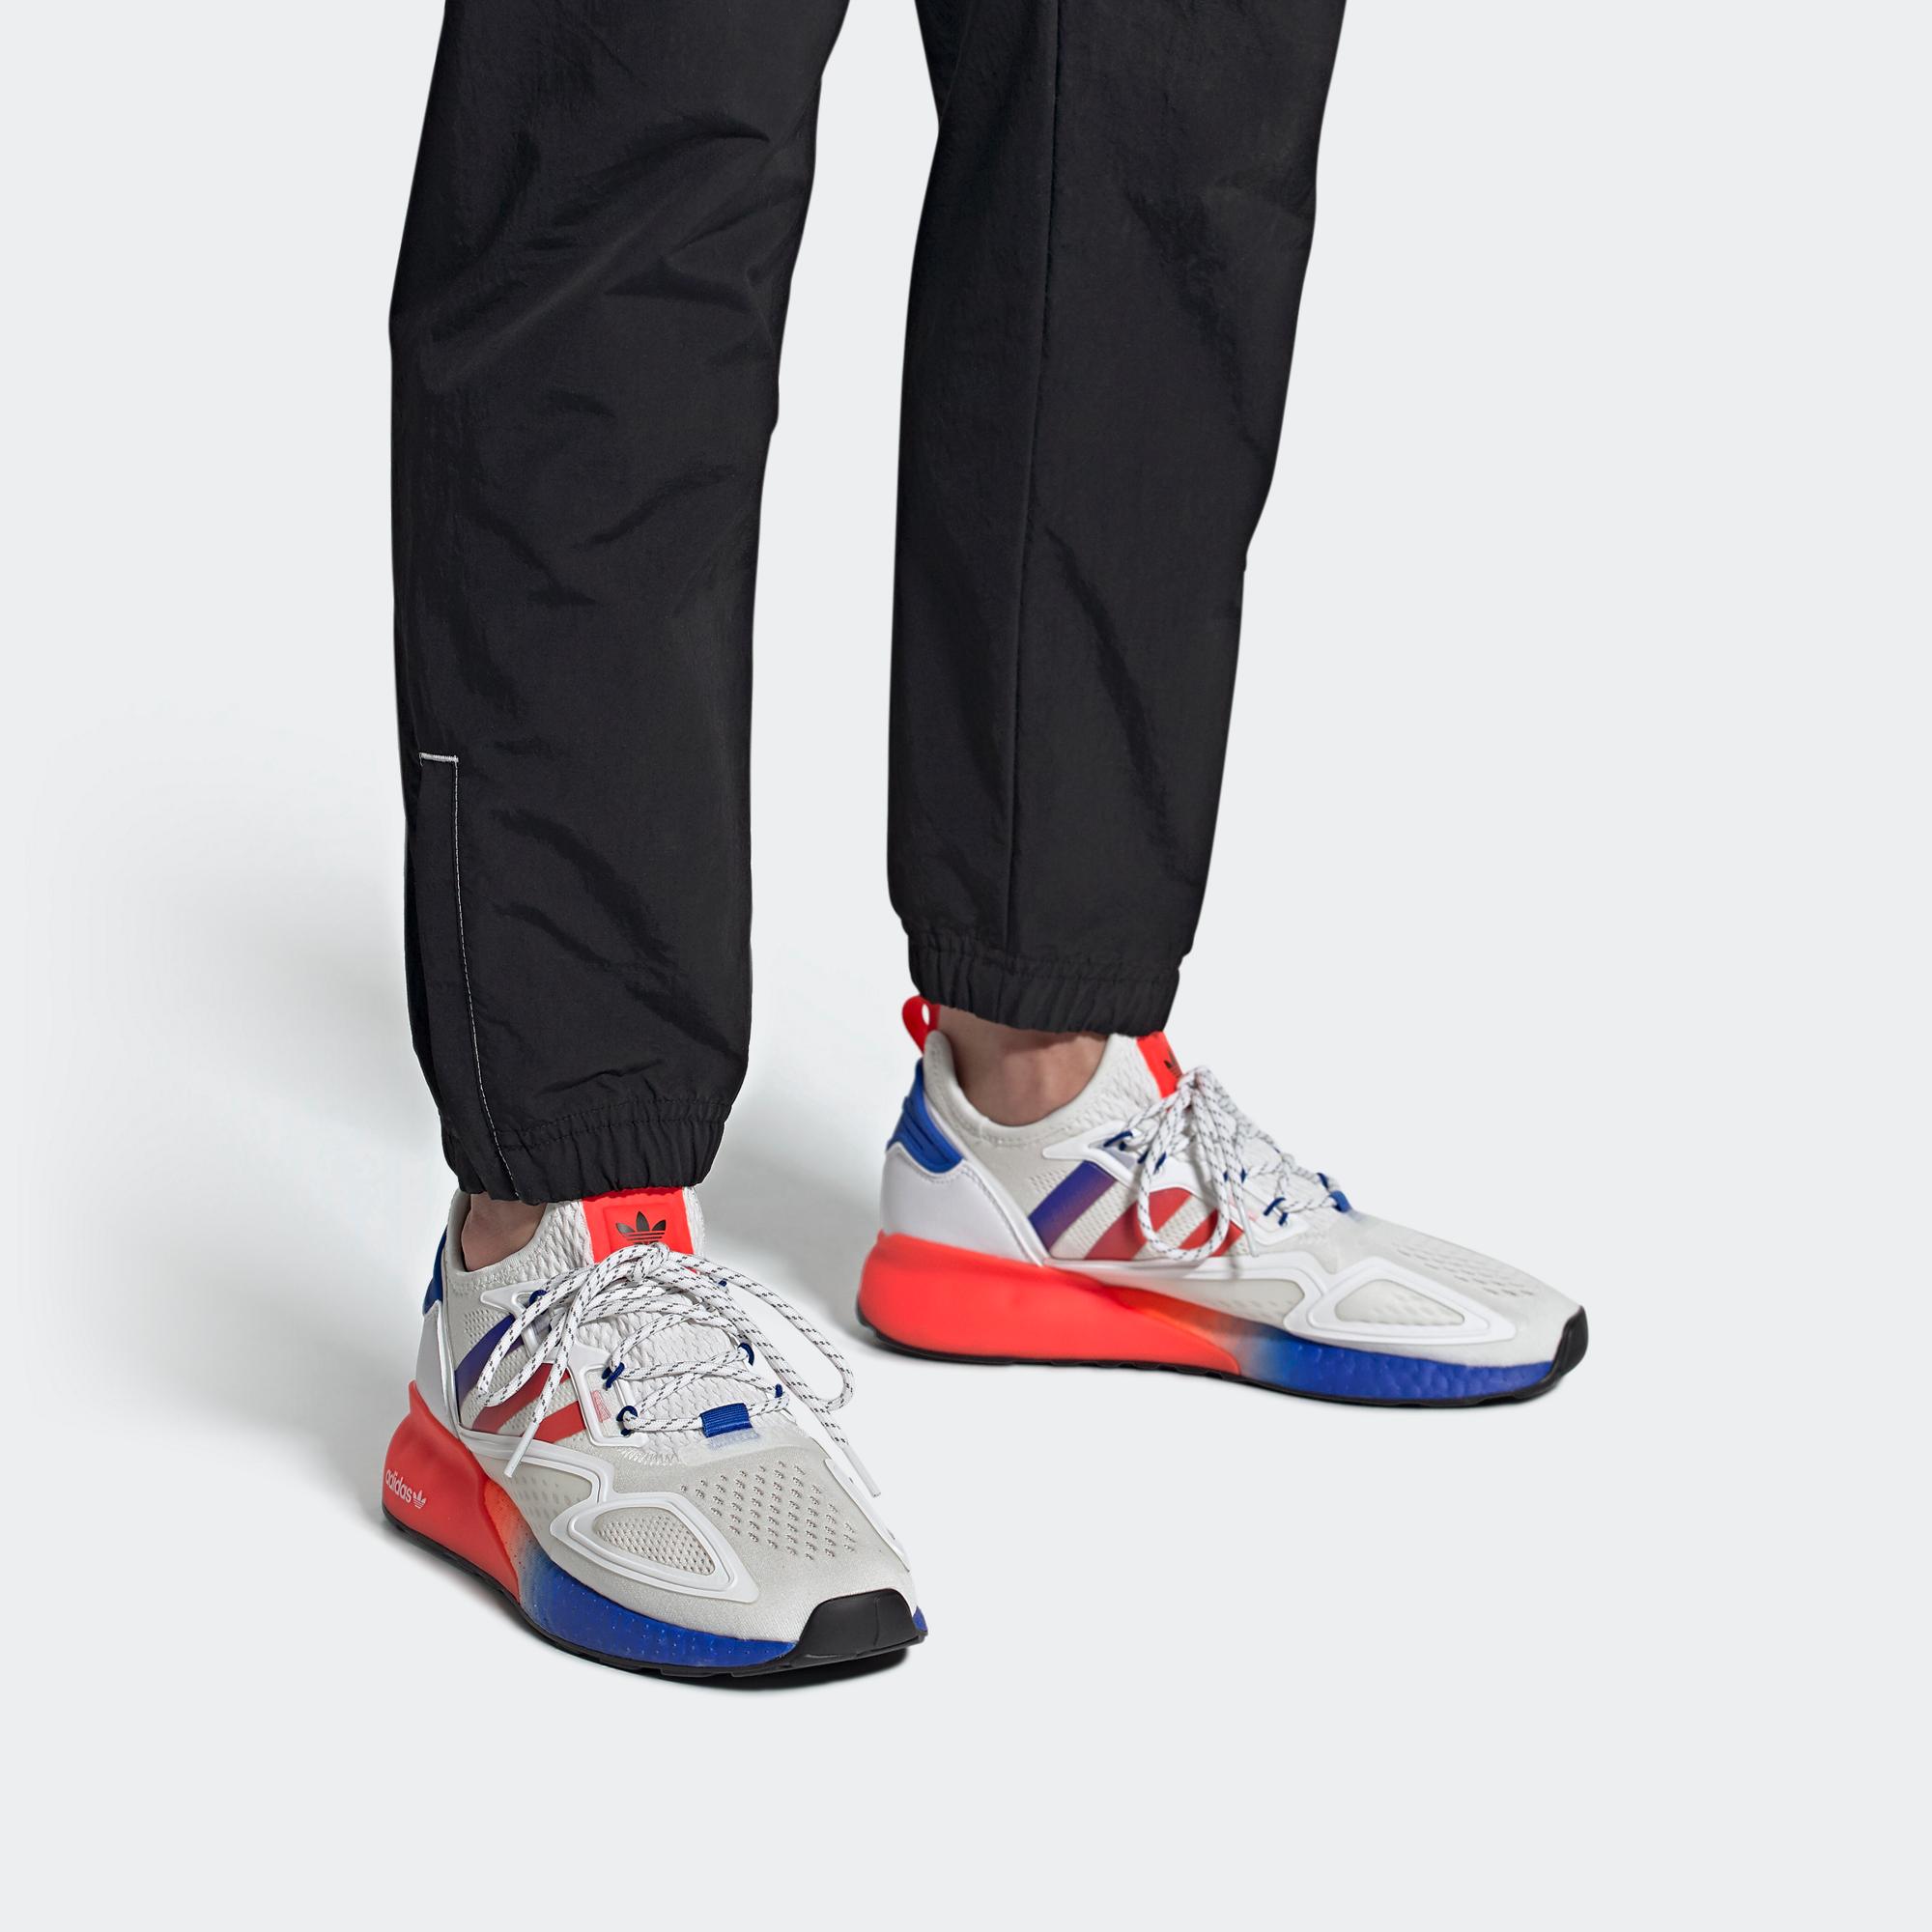 ZX 2K BOOST 運動鞋- 白色| 男子| adidas(愛迪達)香港官方網上商店